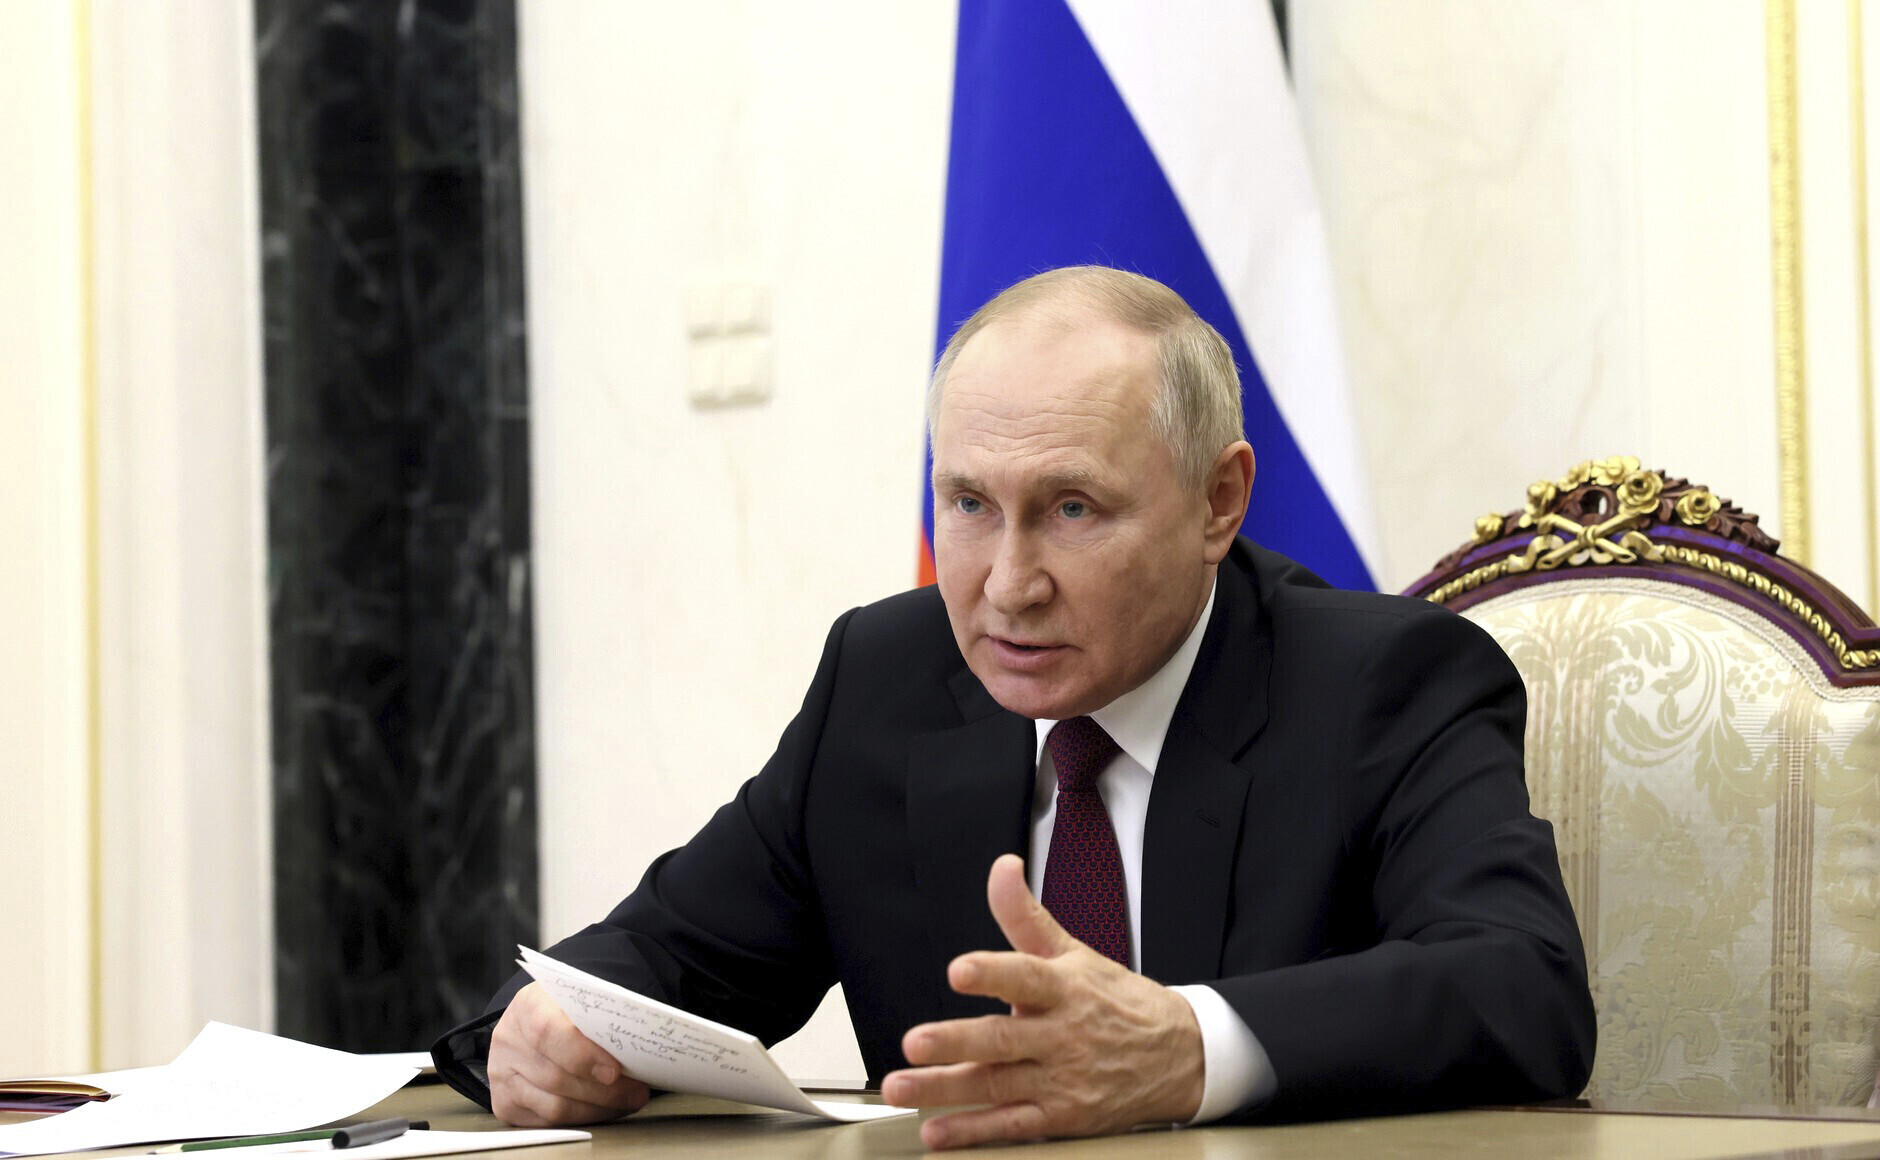 Fordulat a háborúban? Putyin „kész tárgyalni mindenkivel az elfogadható eredmények érdekében”